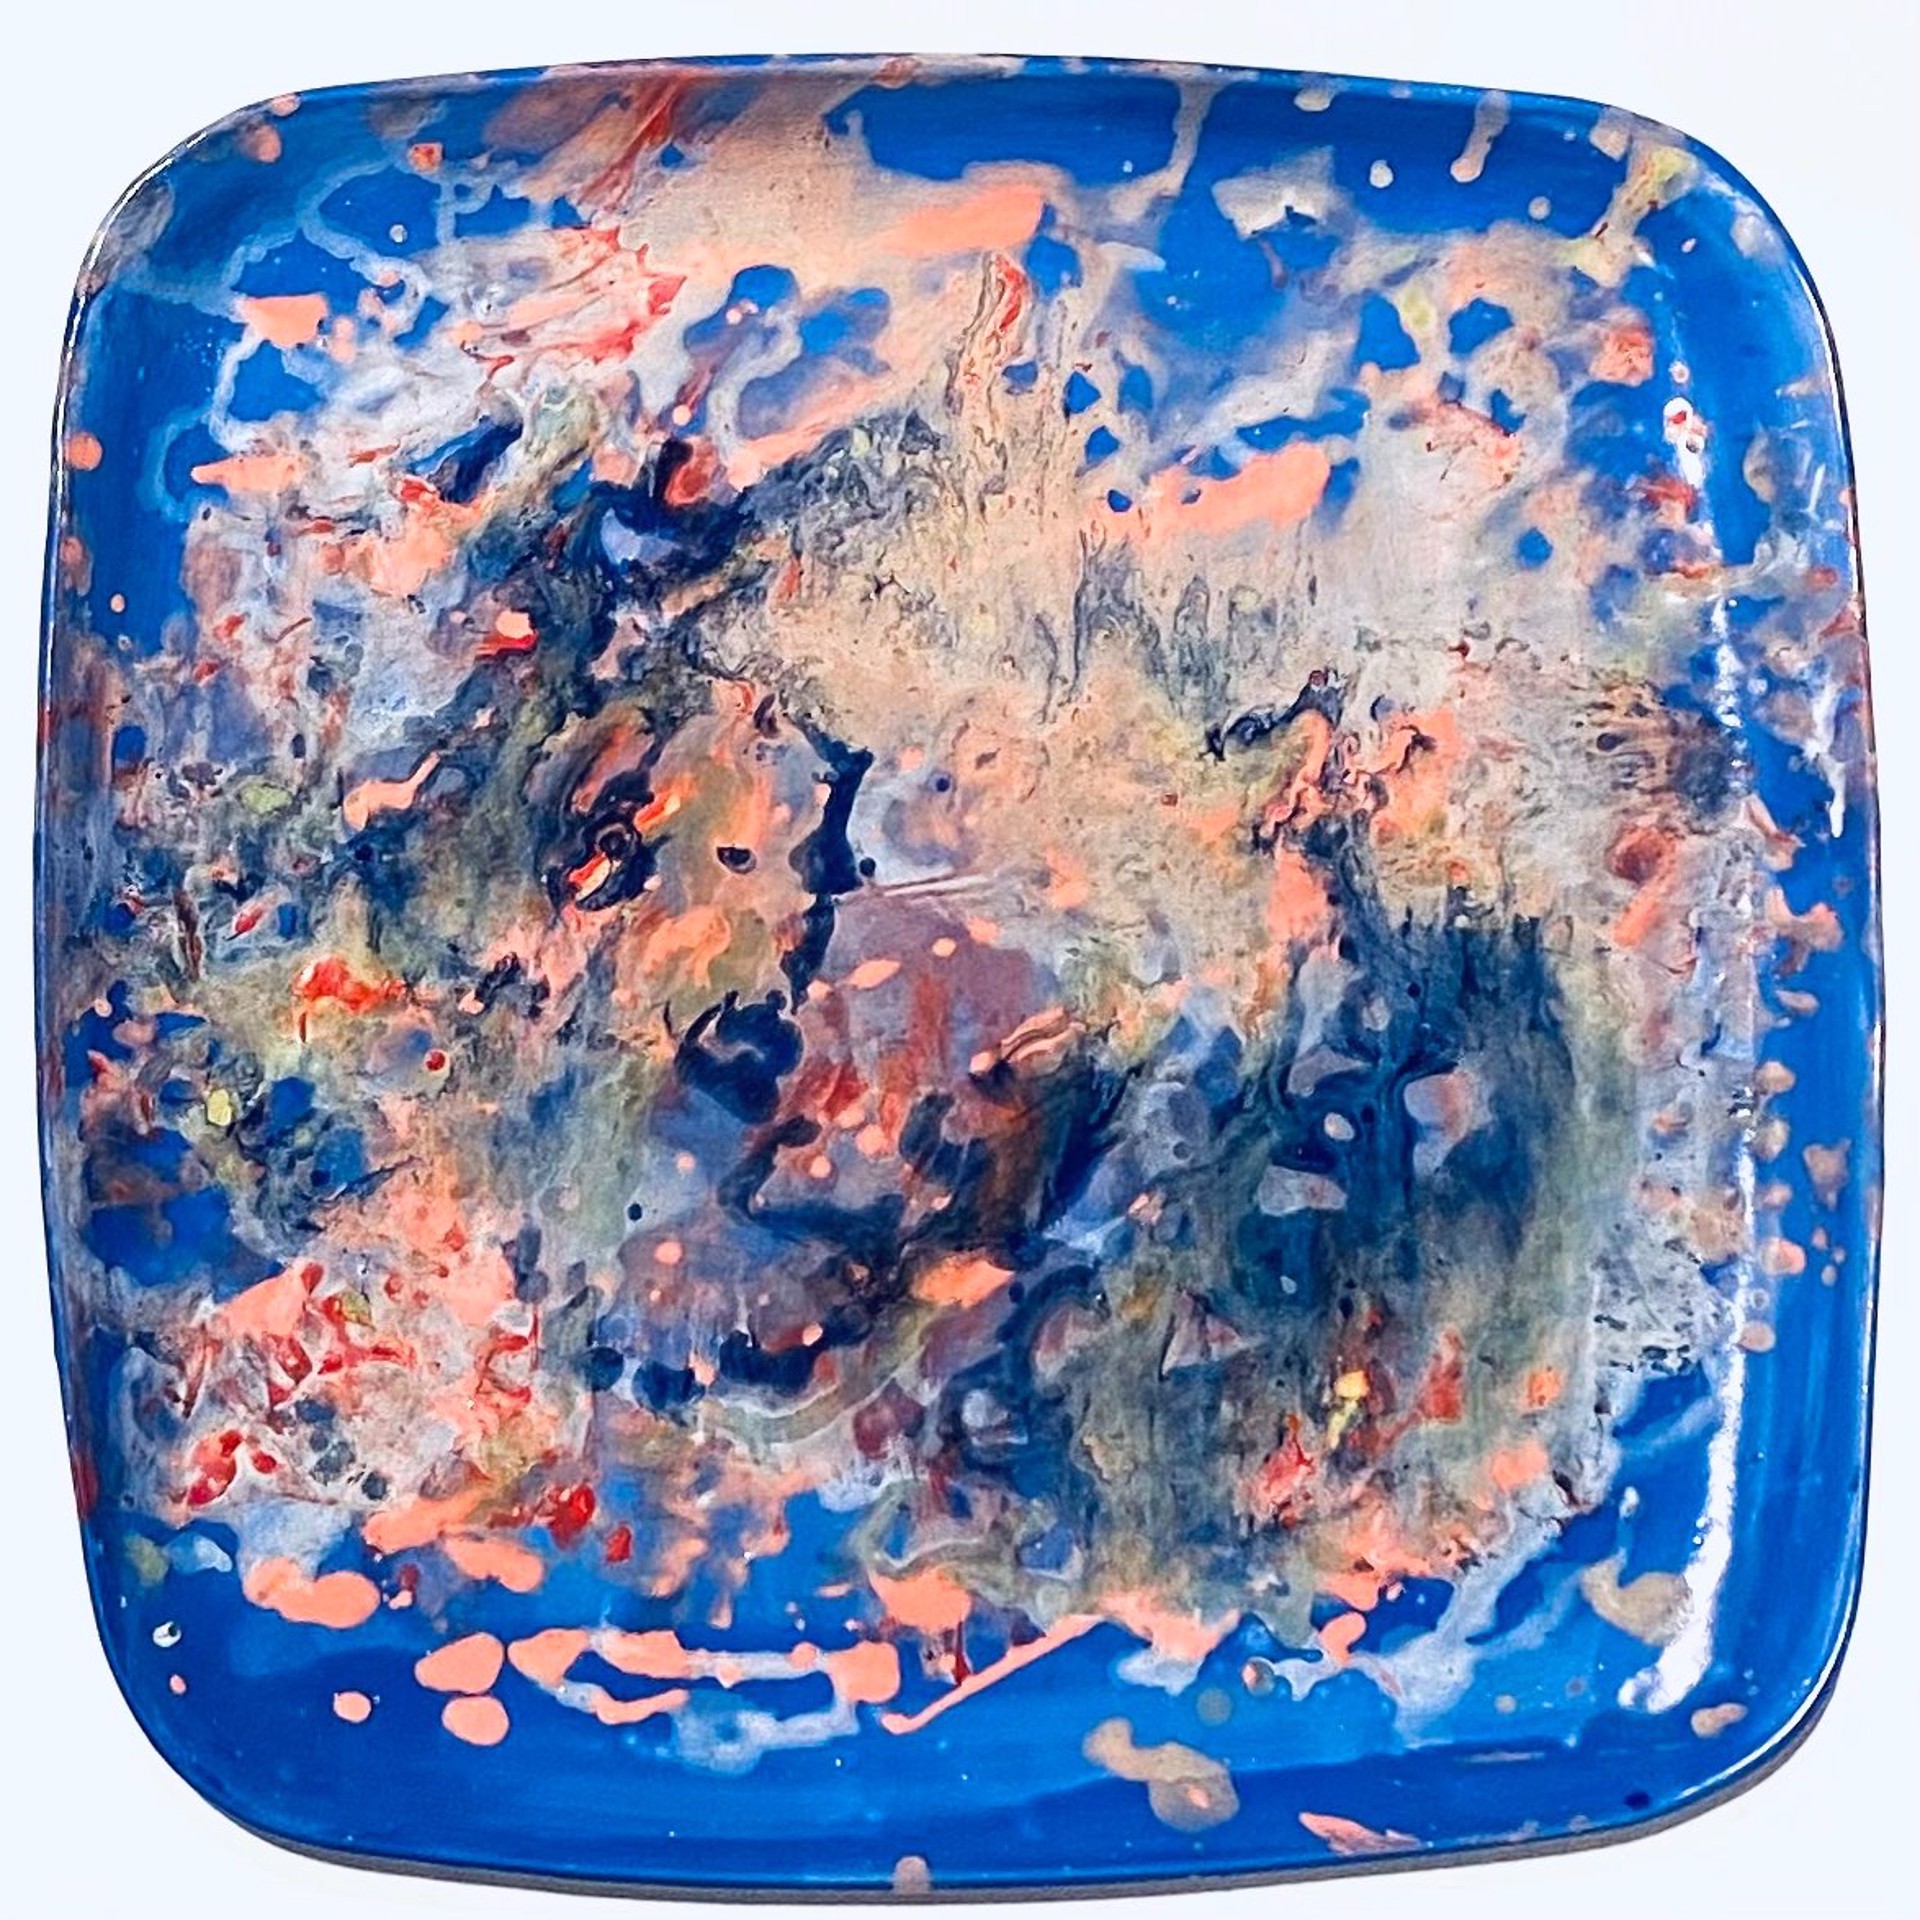 Sharpe22-5 Large Square Blue Splatter Platter by Venetia & John Sharpe